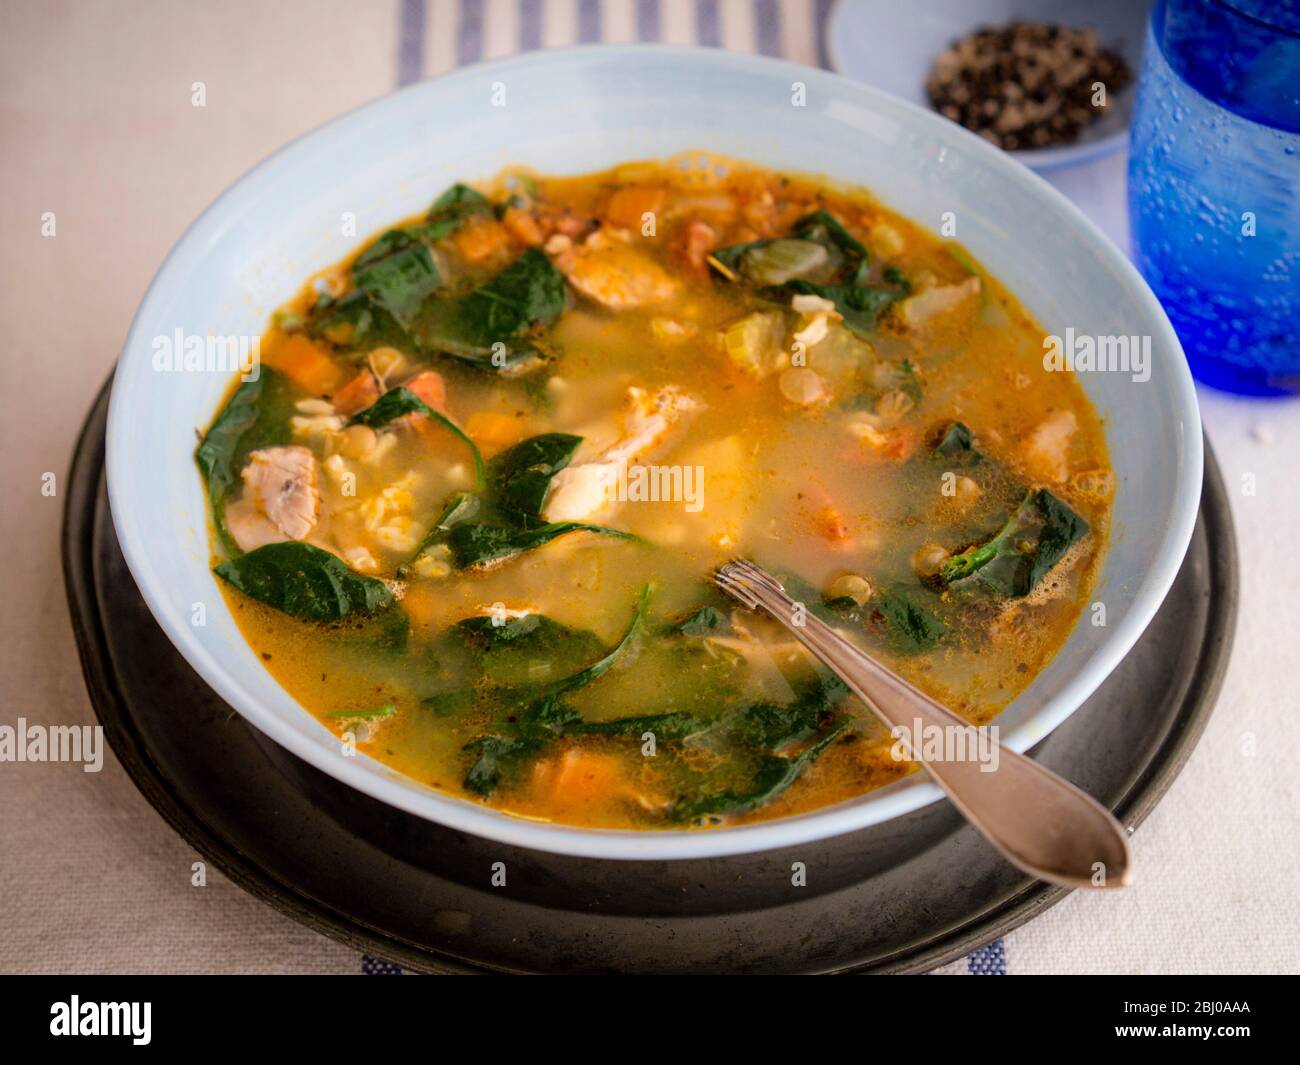 Komplette Mahlzeit Suppe von Huhn, Chorizo-Wurst und Gemüse mit braunem Reis, Linsen und Spinat, in blass blau Schüssel serviert Stockfoto